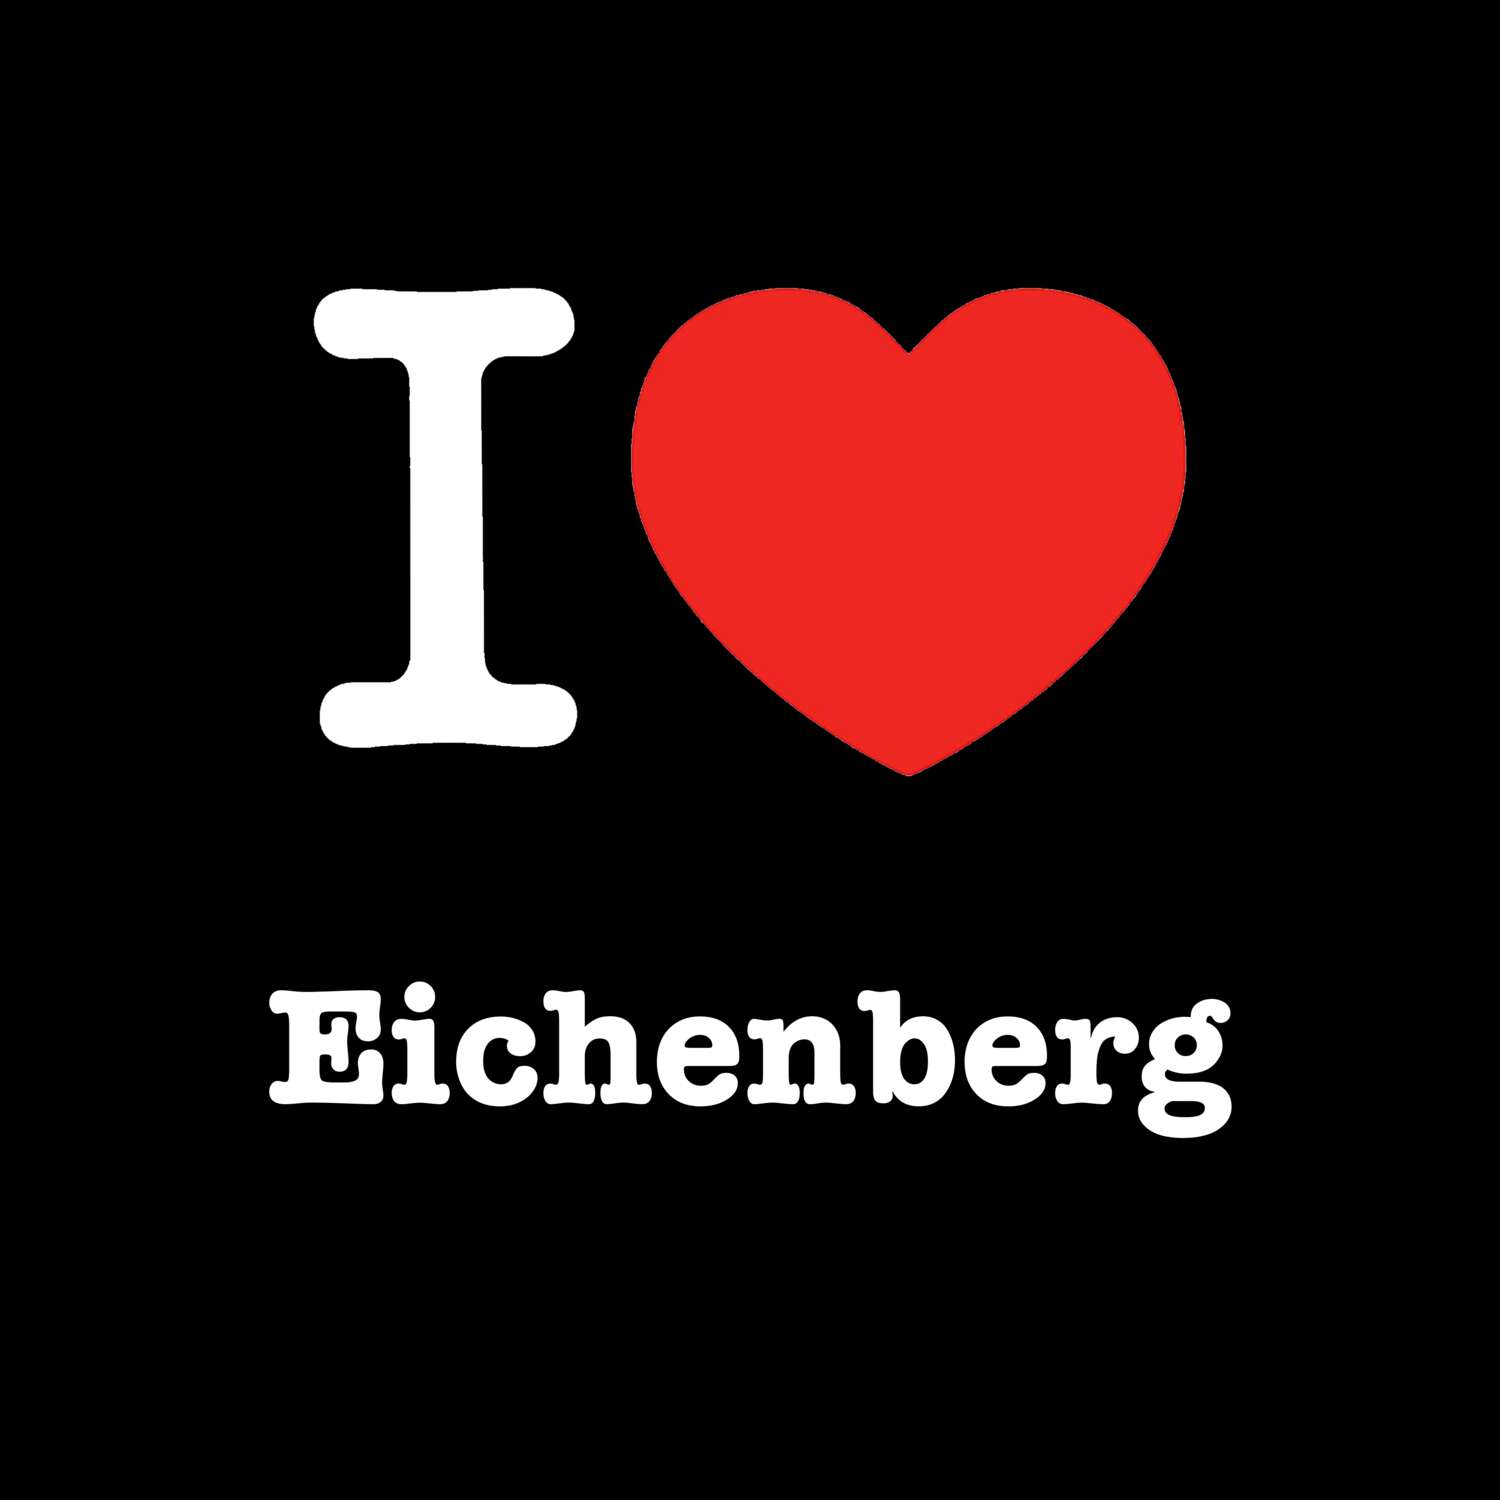 Eichenberg T-Shirt »I love«